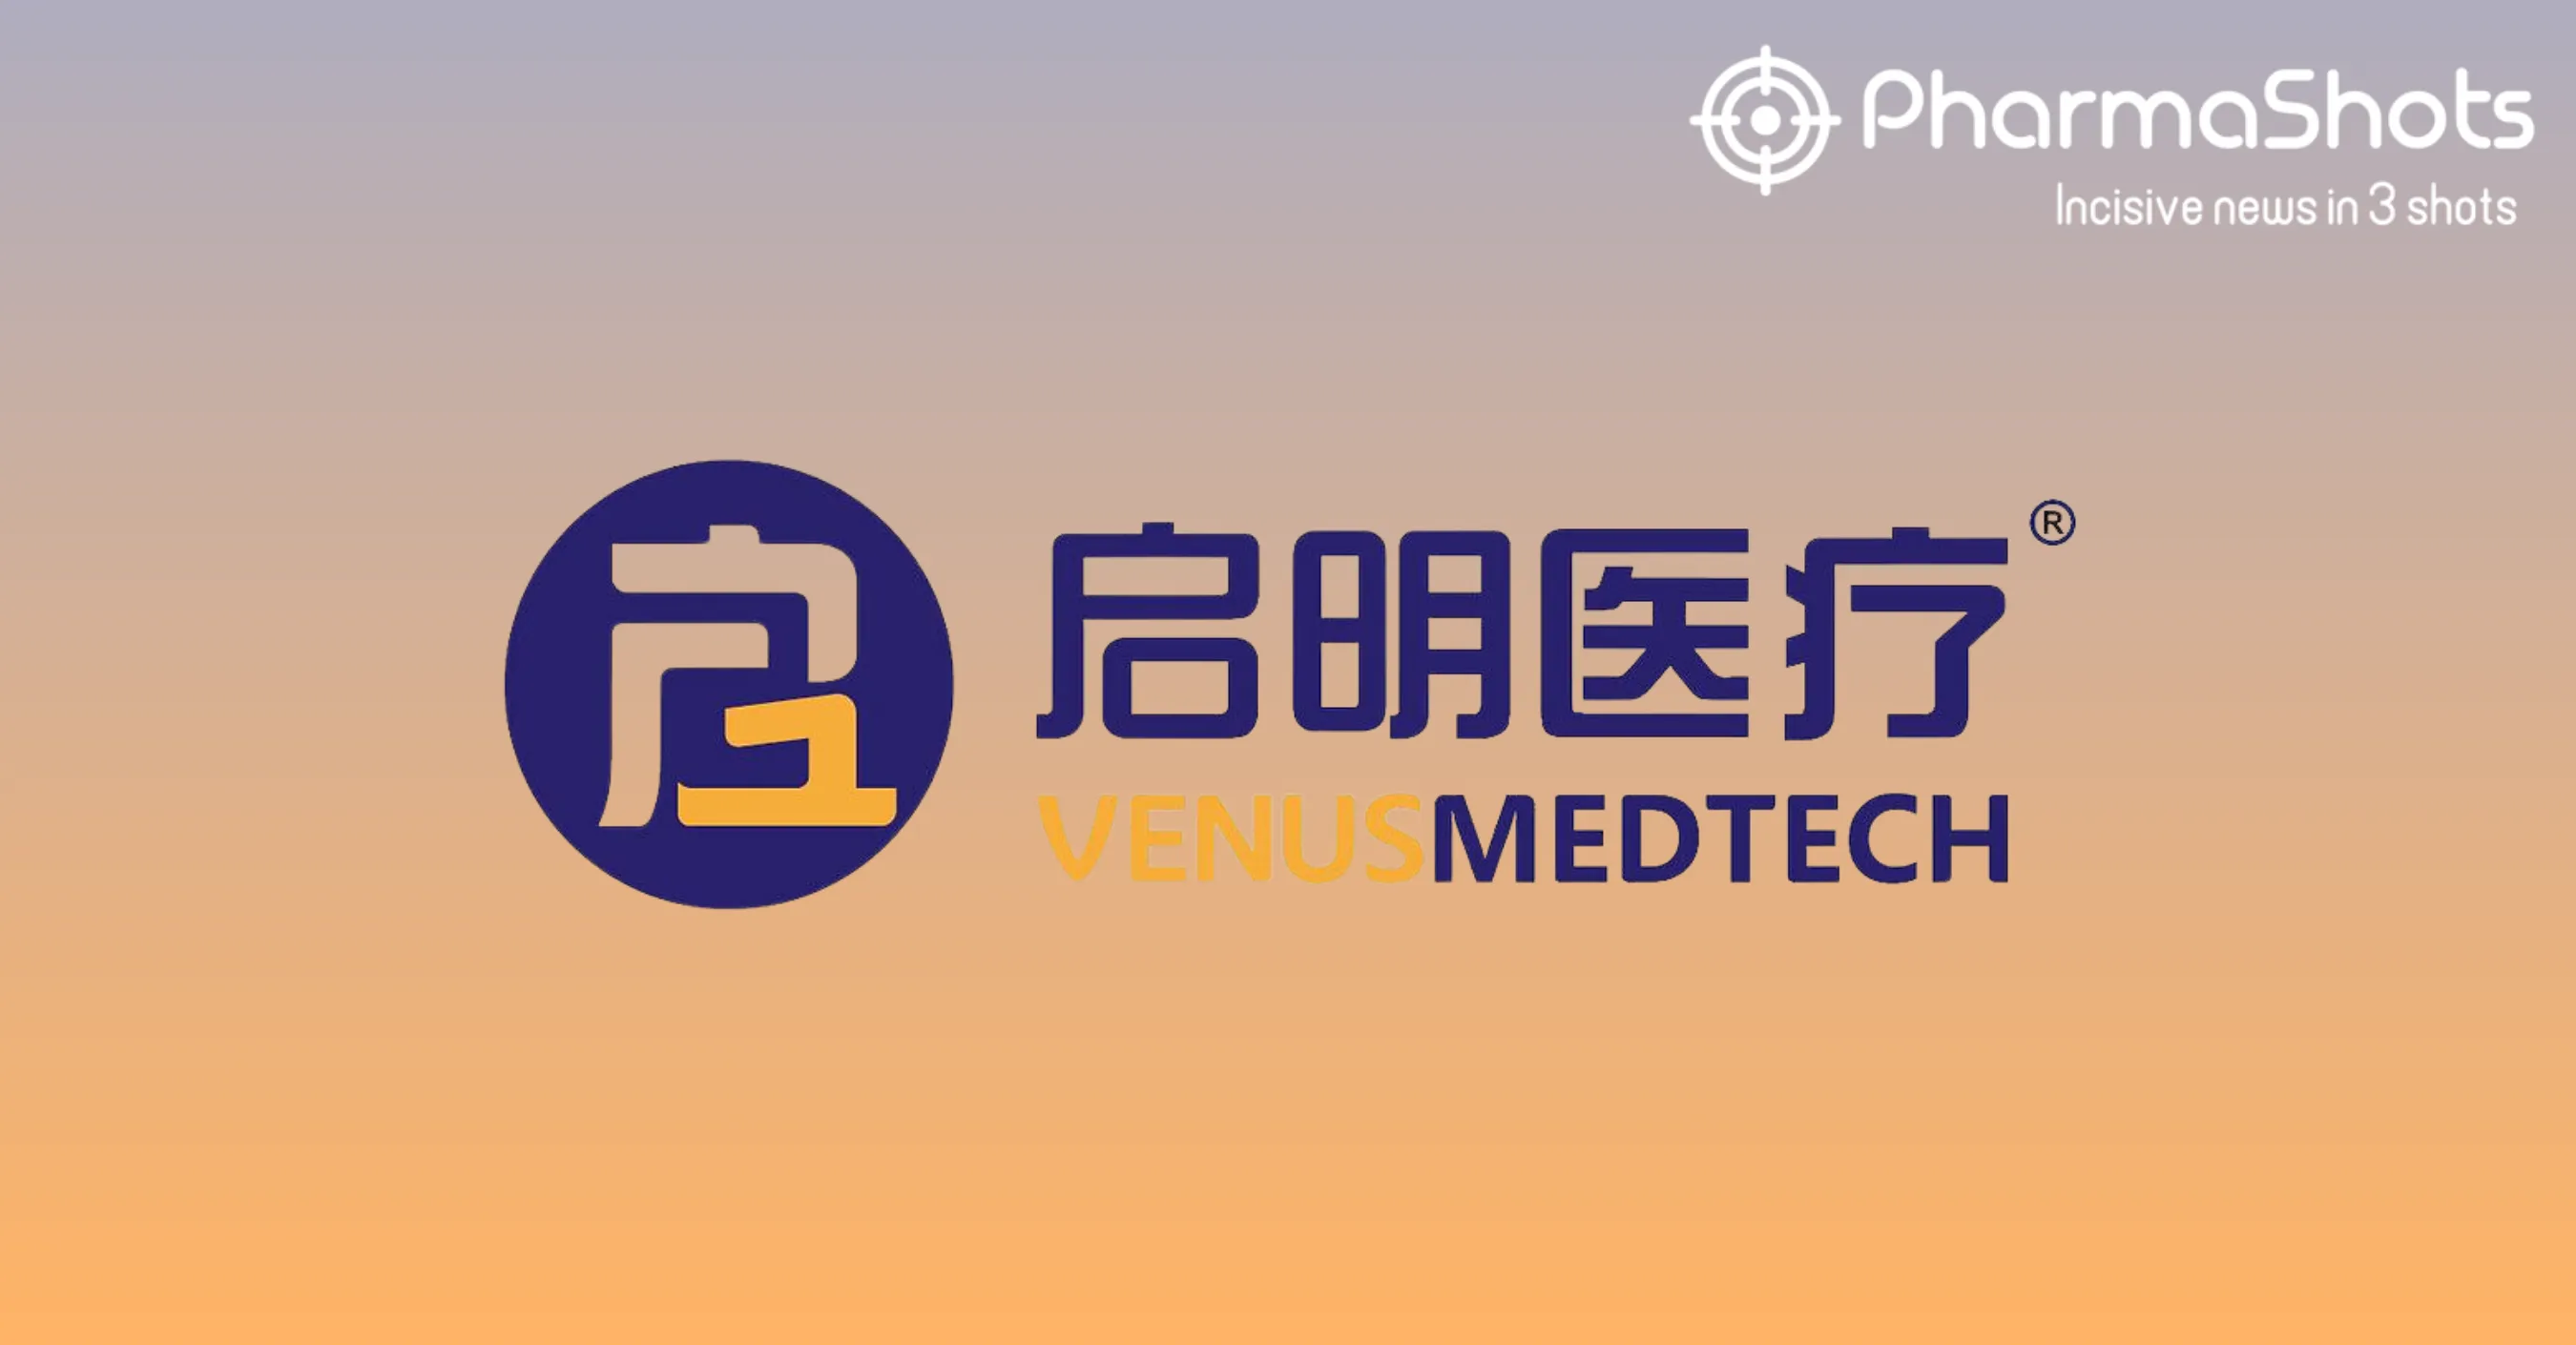 Venus Medtech’s VenusP-Valve System Receives Health Canada’s Approval